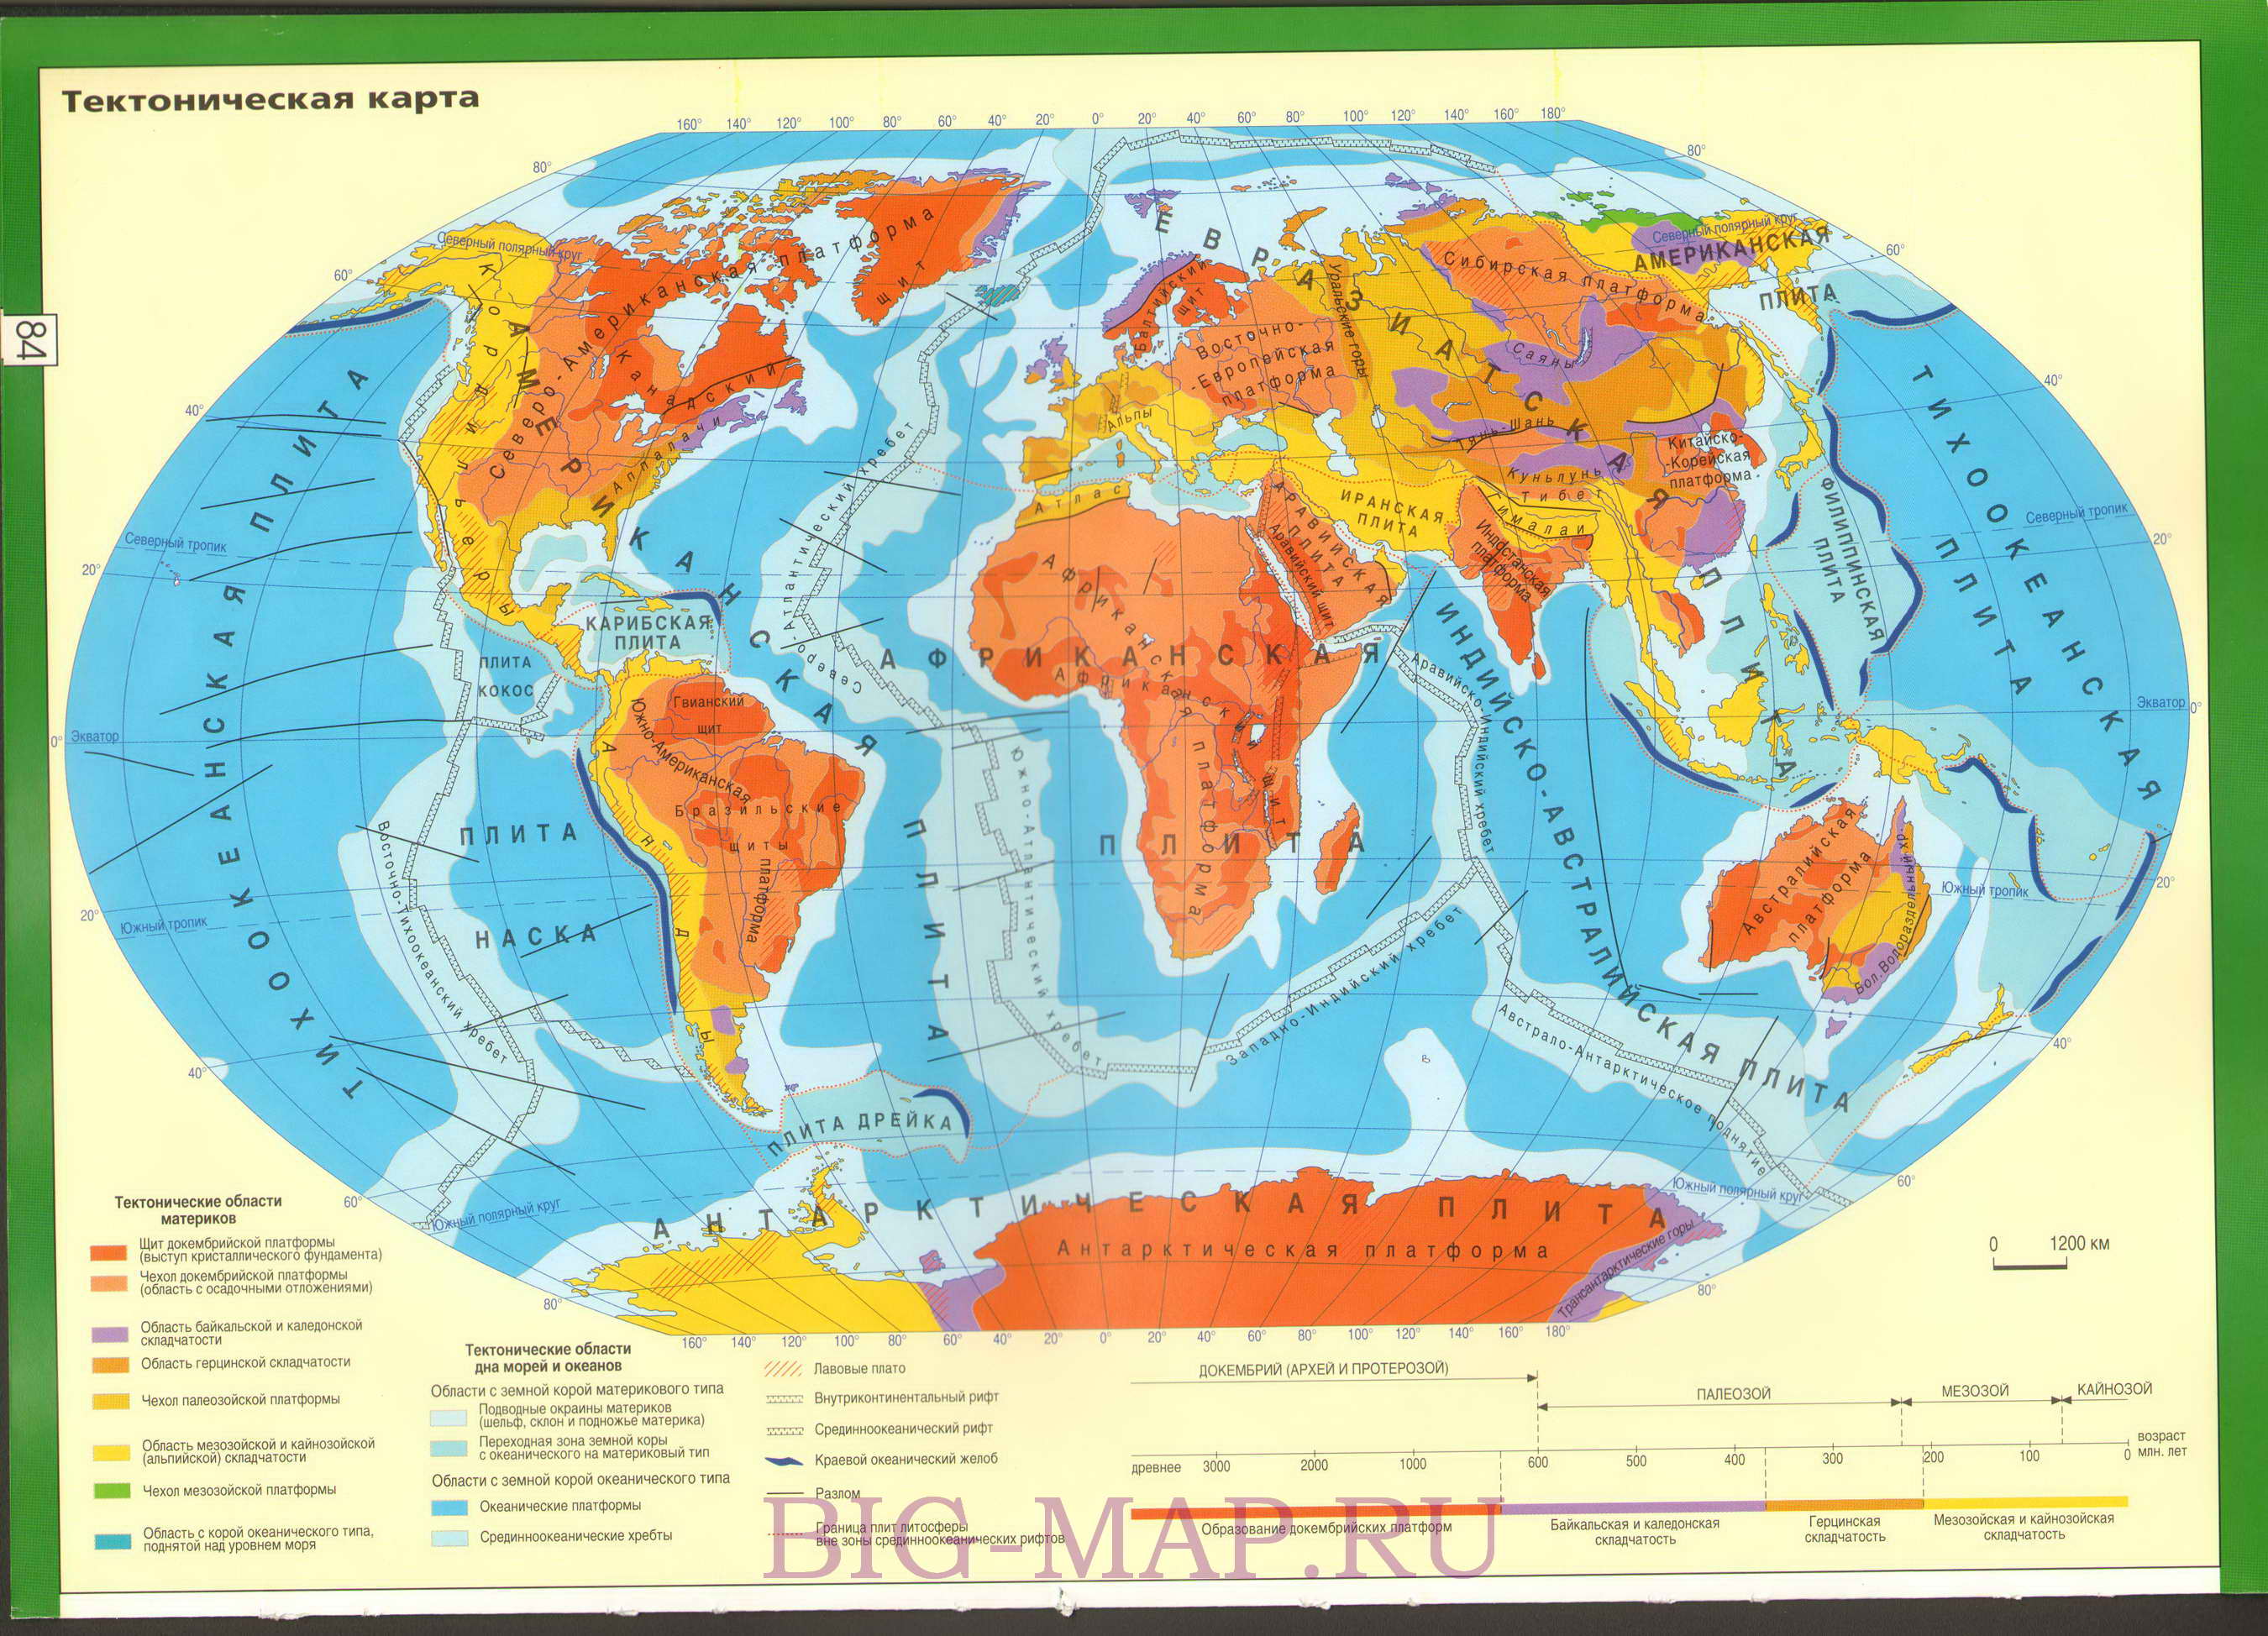 Тектоническая карта мира на русском языке. Карта тектонических областей мира. Карта тектонических областей континентов и океанов, A0 - 